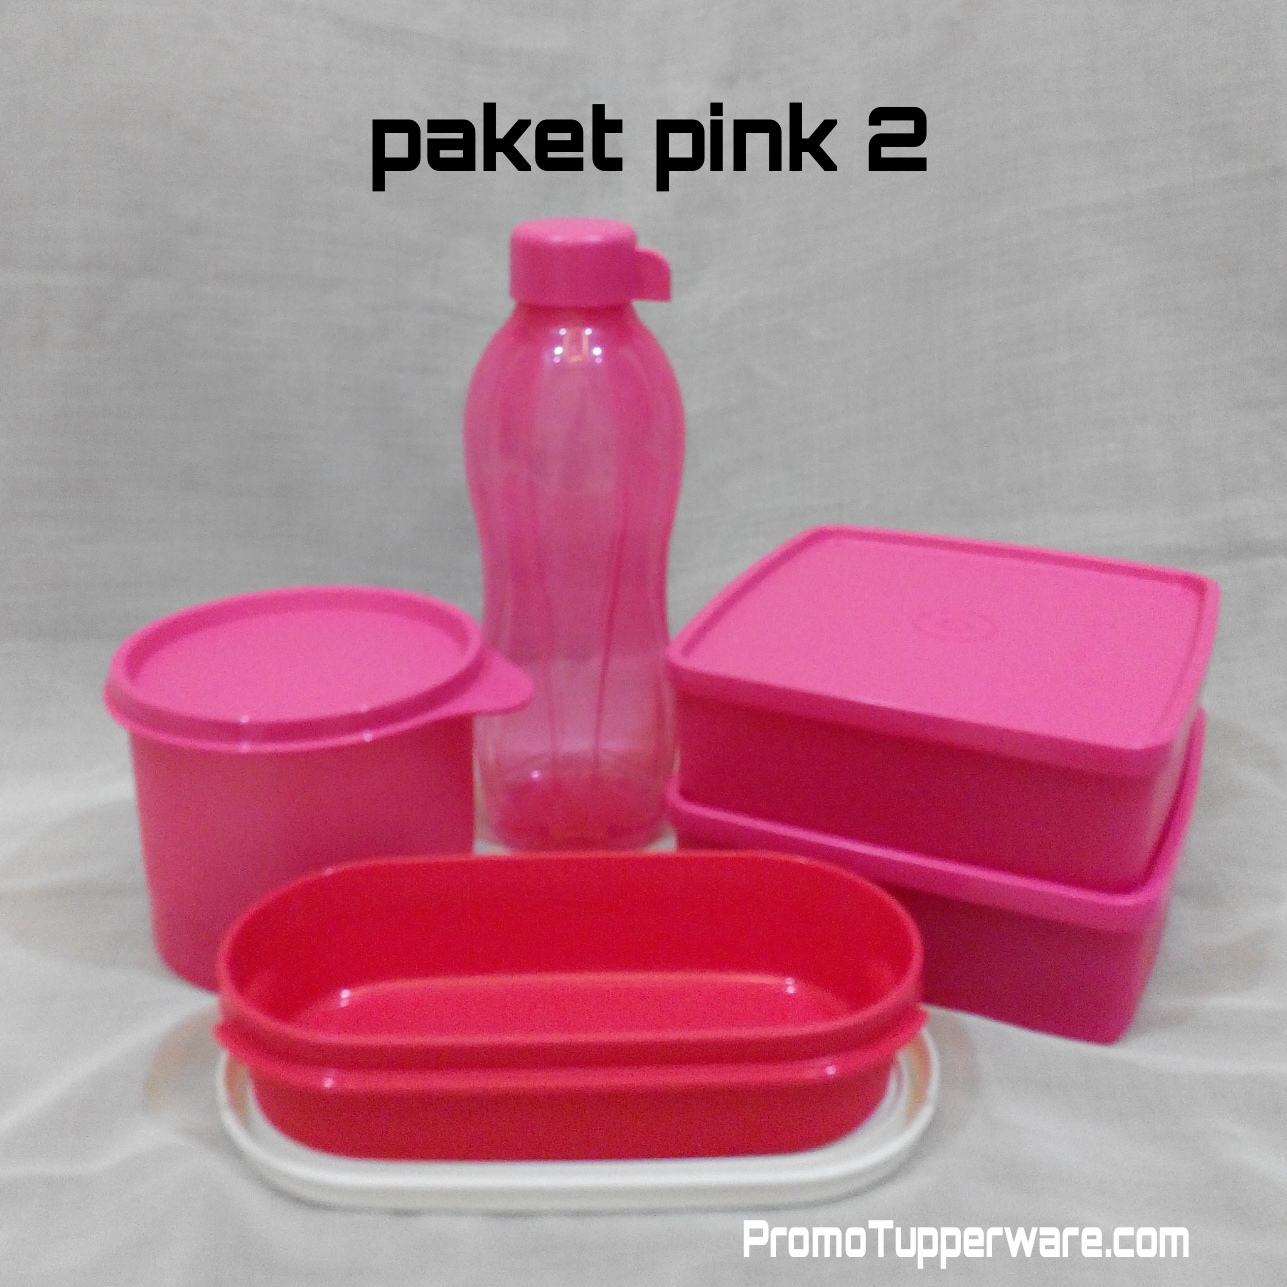 Paket Promo Tupperware Pink 2